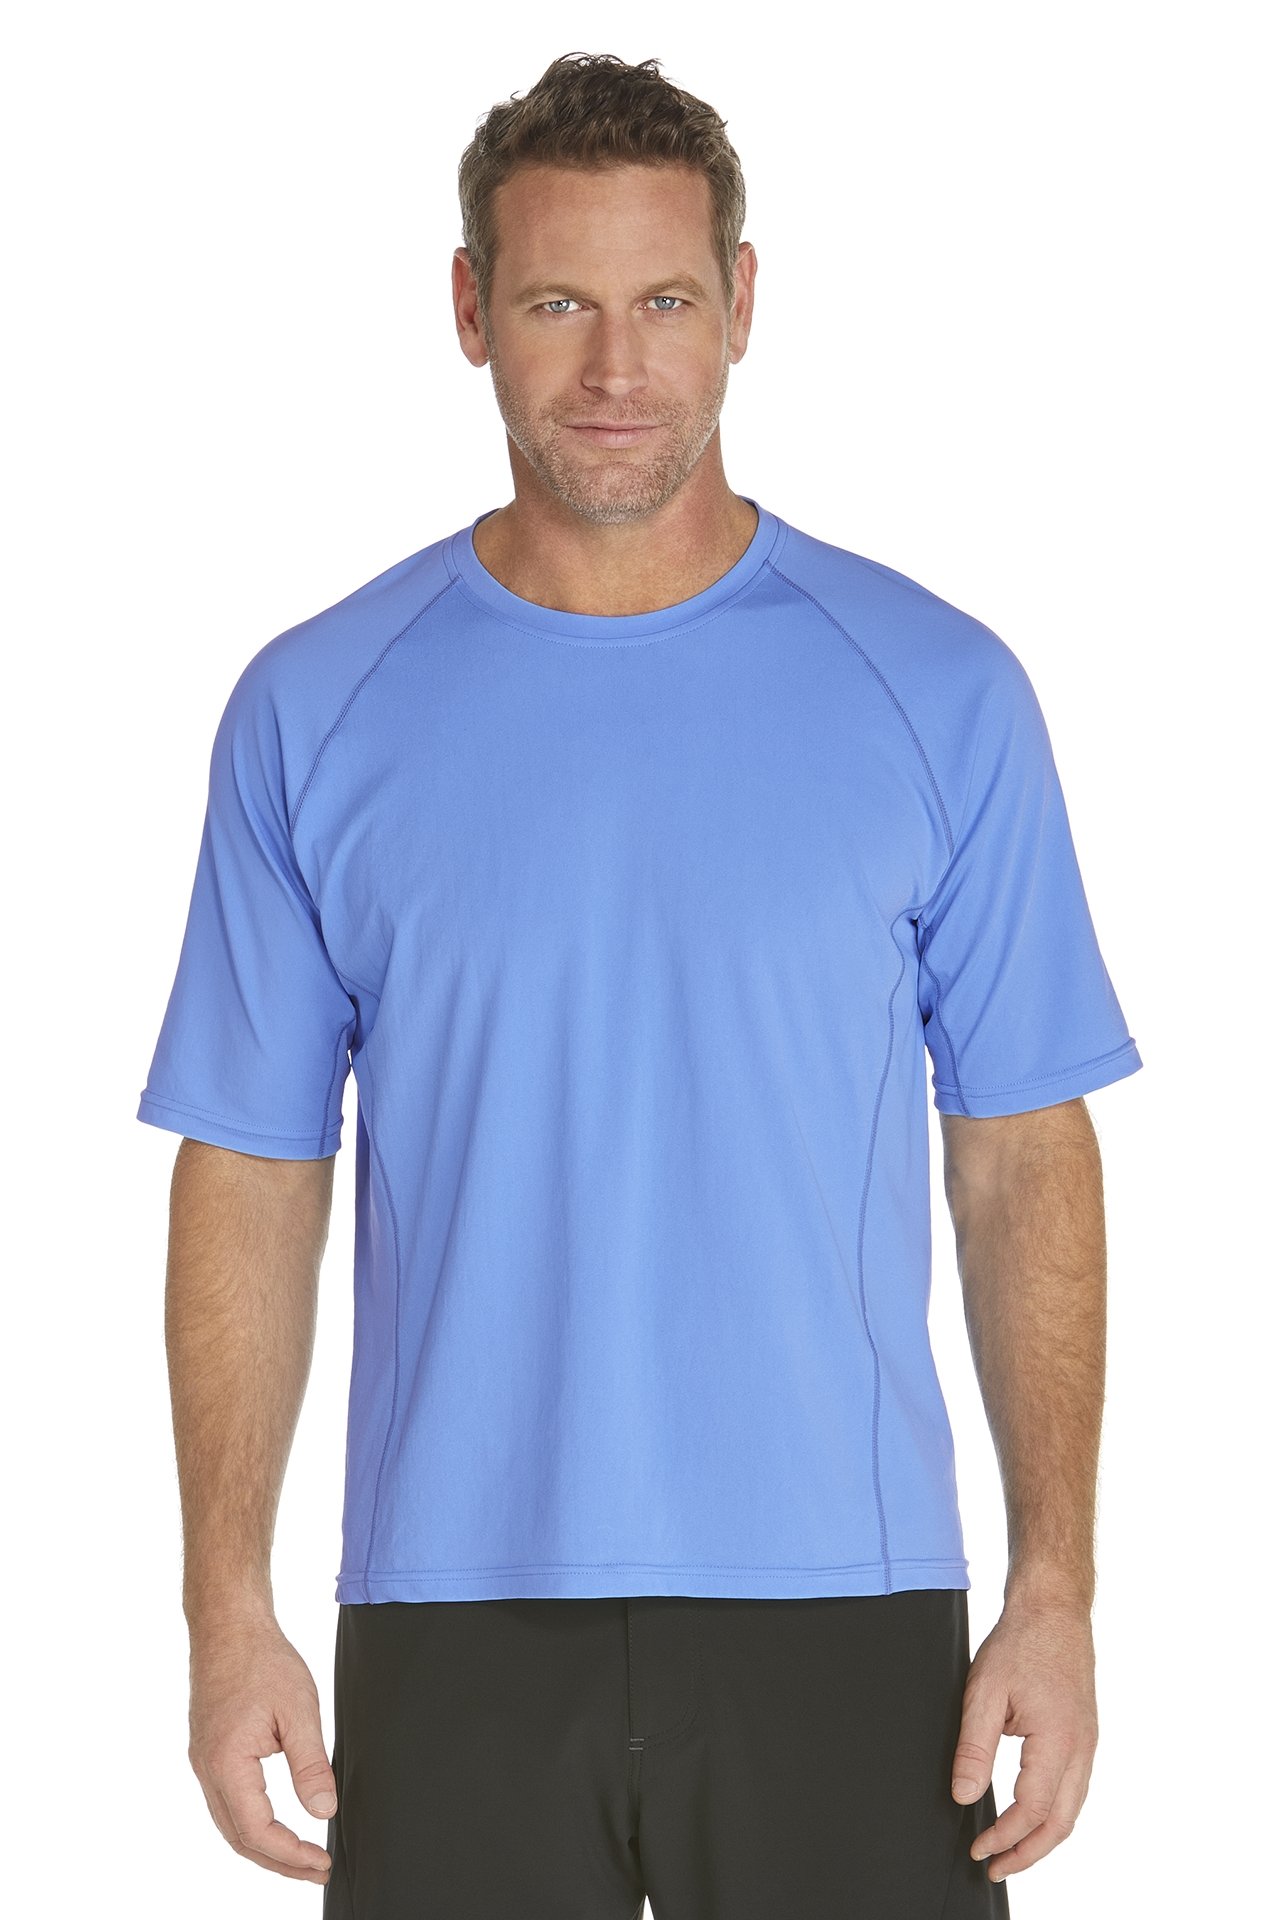 Coolibar - Men's Short-Sleeve Swim Shirt - light blue